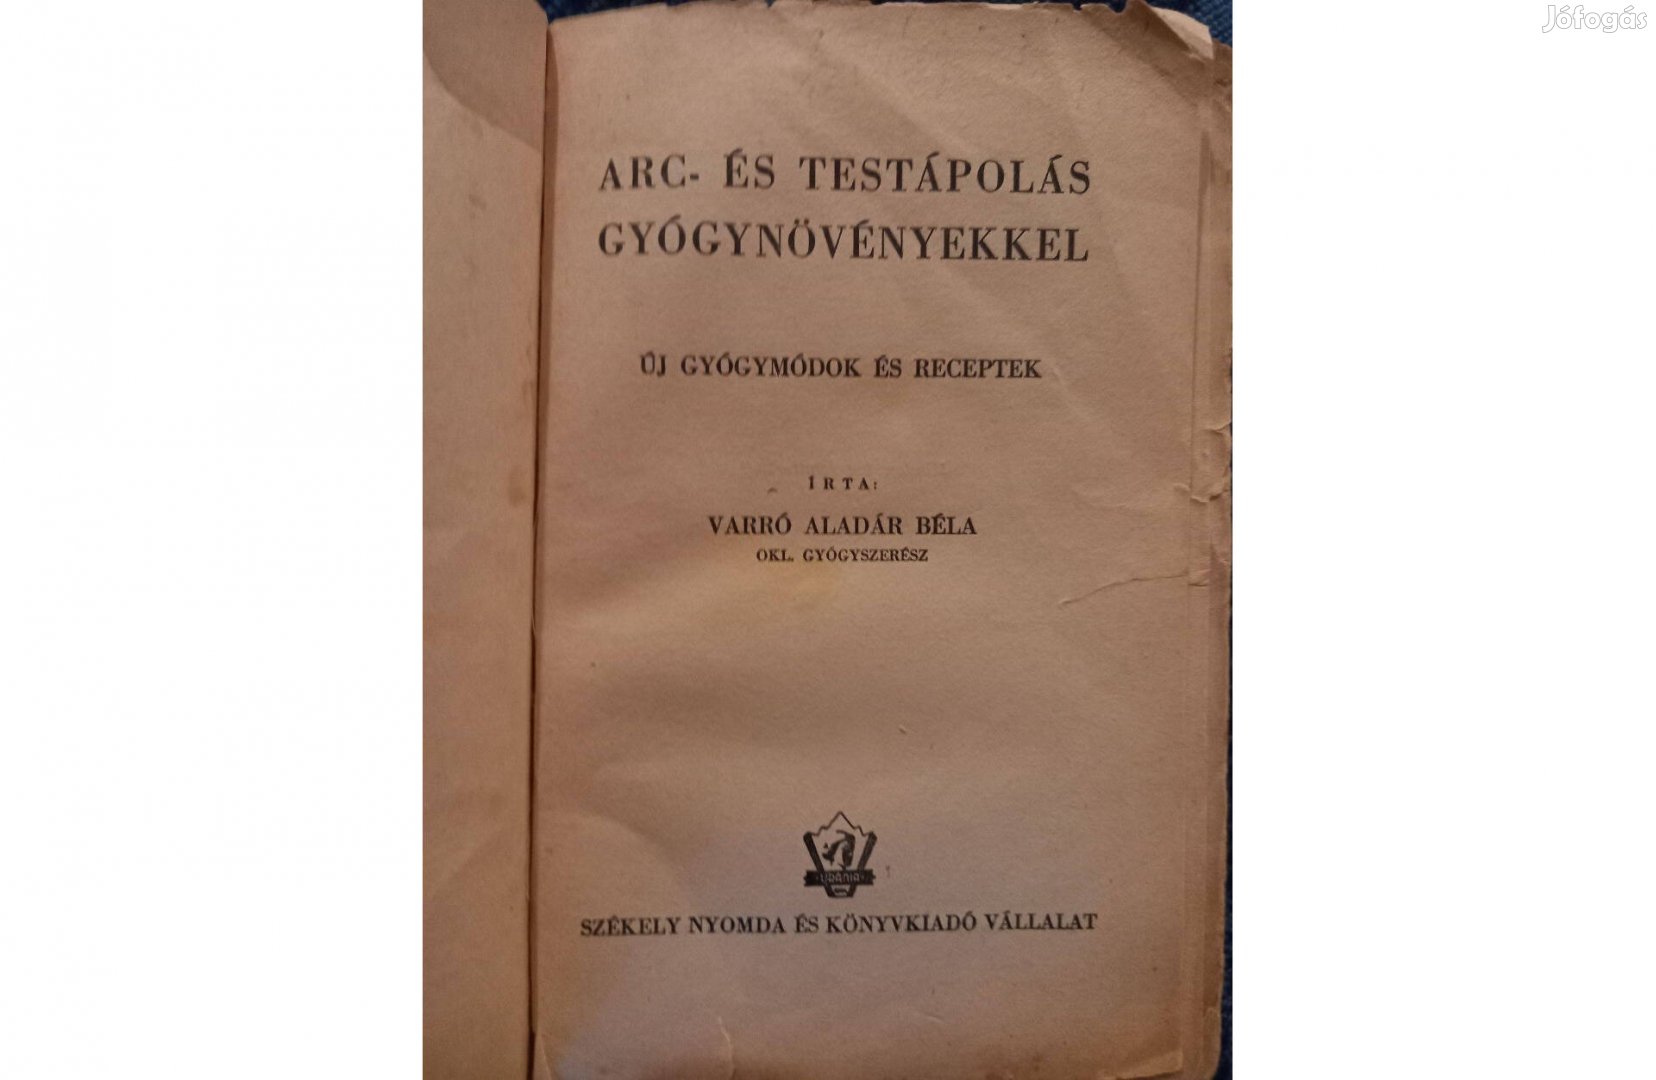 Varró Aladár: Arc- és testápolás gyógynövényekkel,antikvár könyv eladó